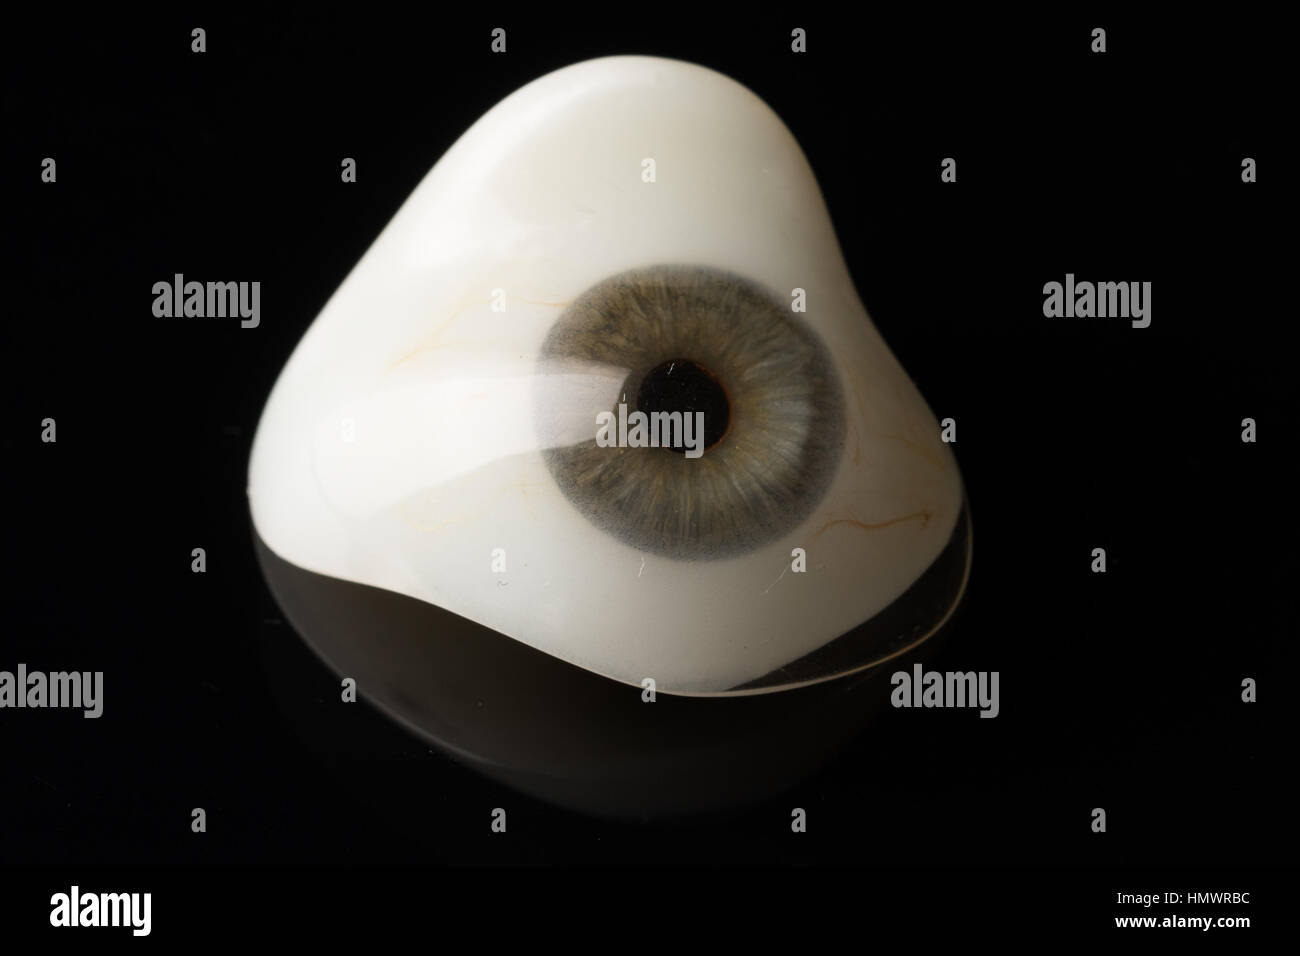 Custom Made Prosthetic Eye